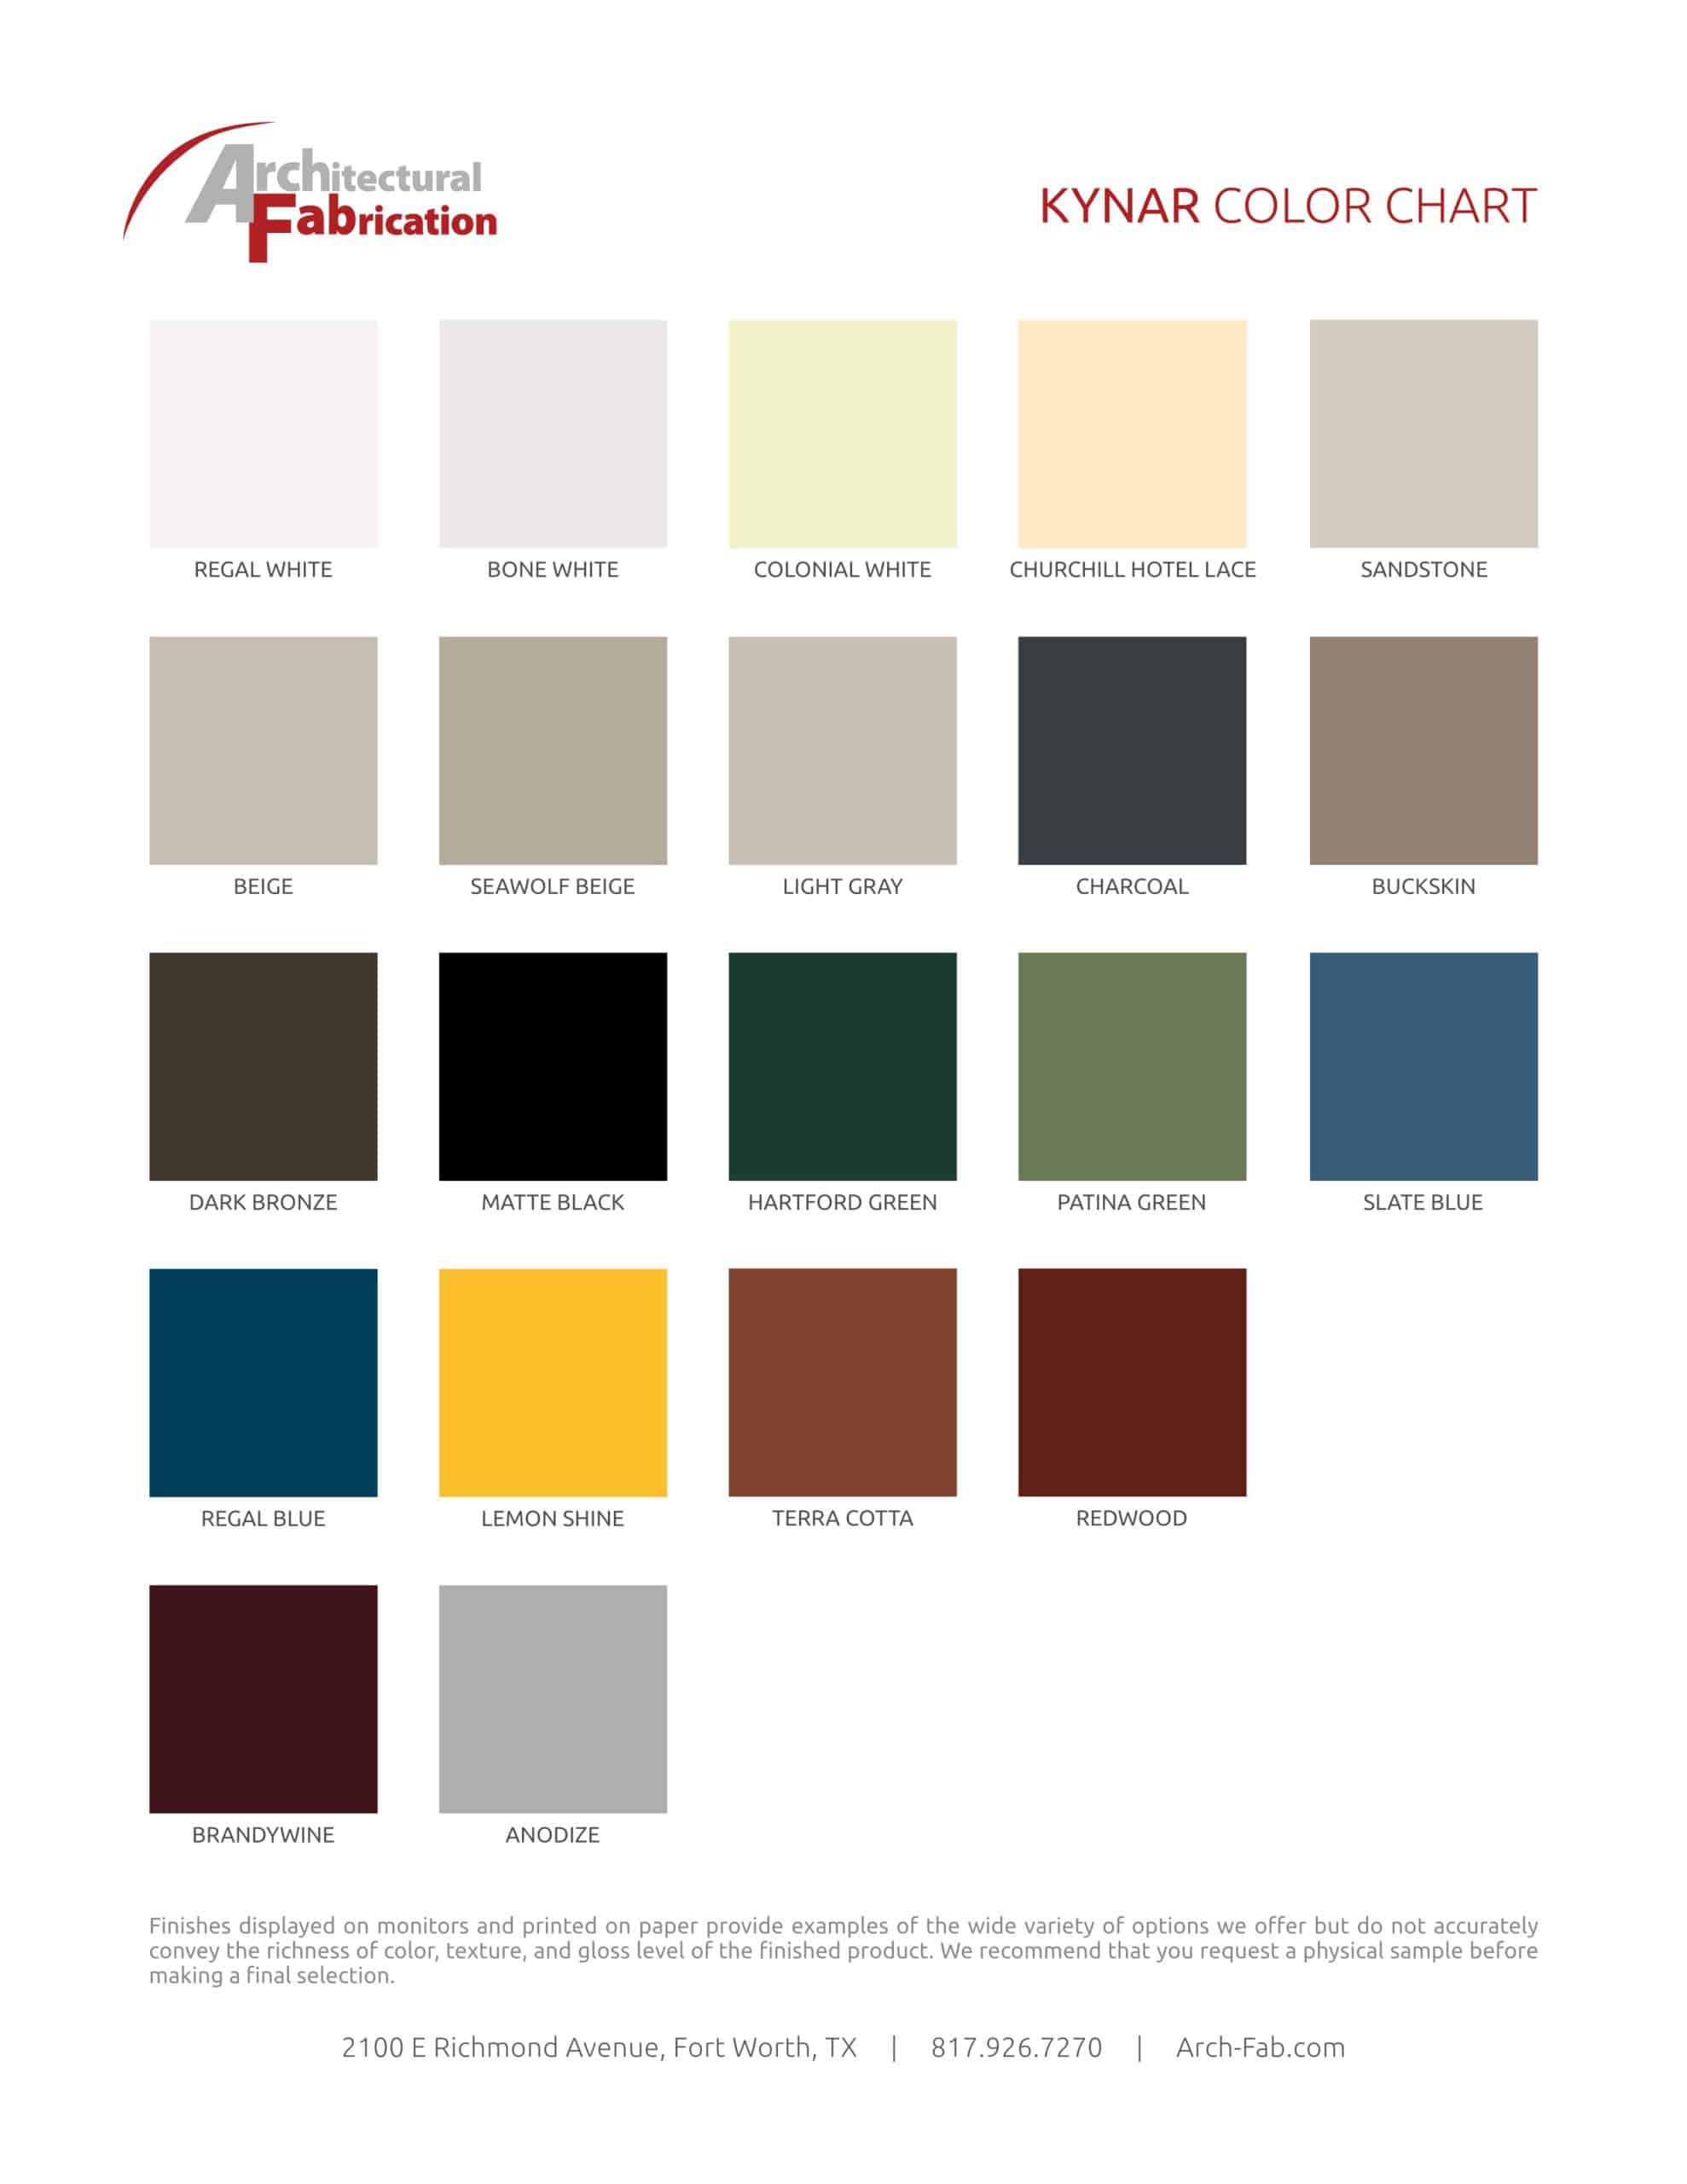 Arch-Fab Kynar Color Sheet